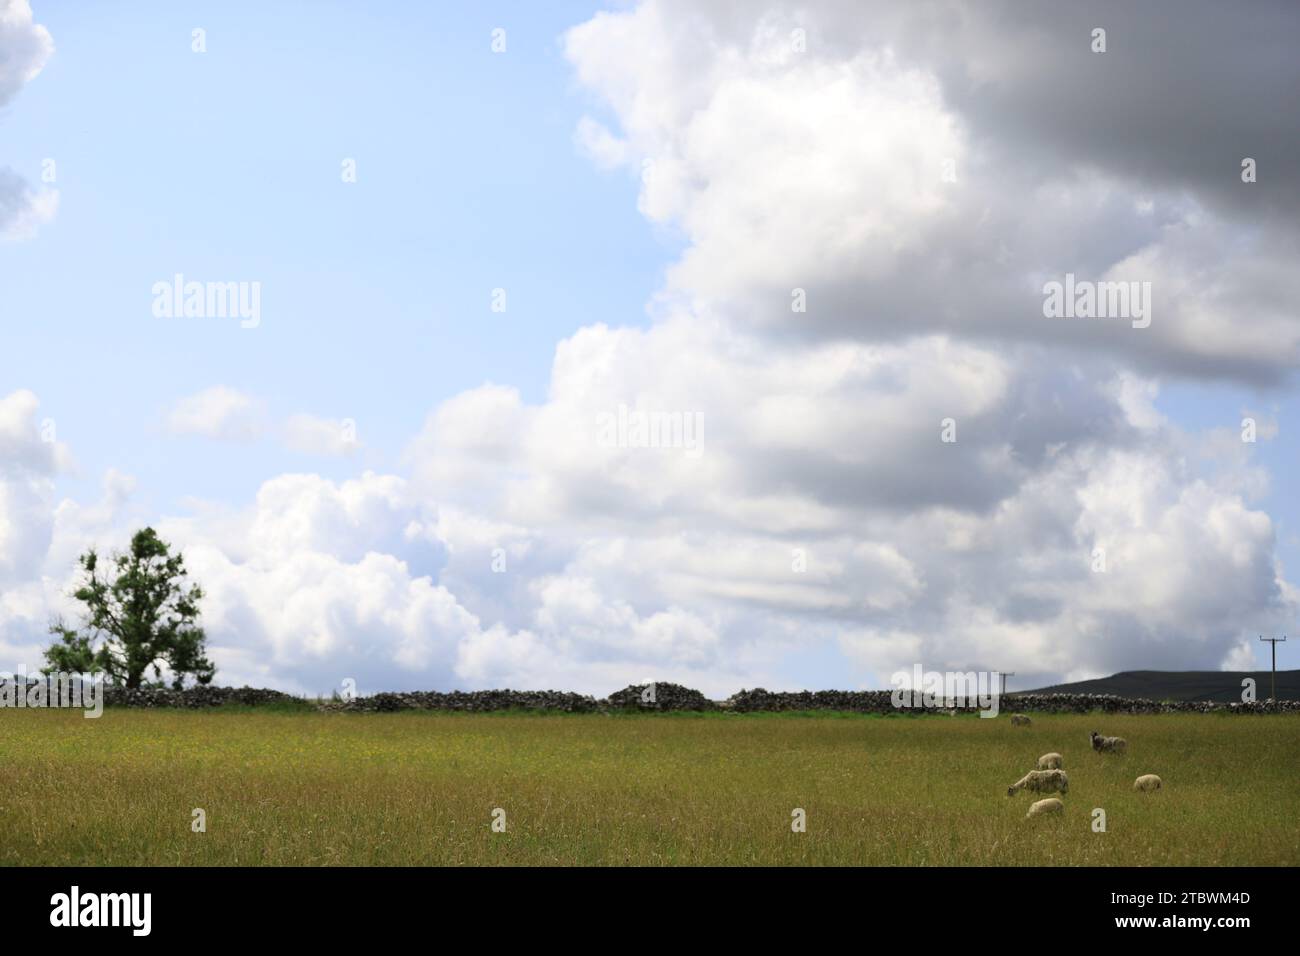 Eines Tages waren die Schafe zufrieden mit dem Grasen der Himmel ist blau, Wolken sind wie Baumwollwolle, die Szene ist eine ruhige, entspannte Welt. Stockfoto